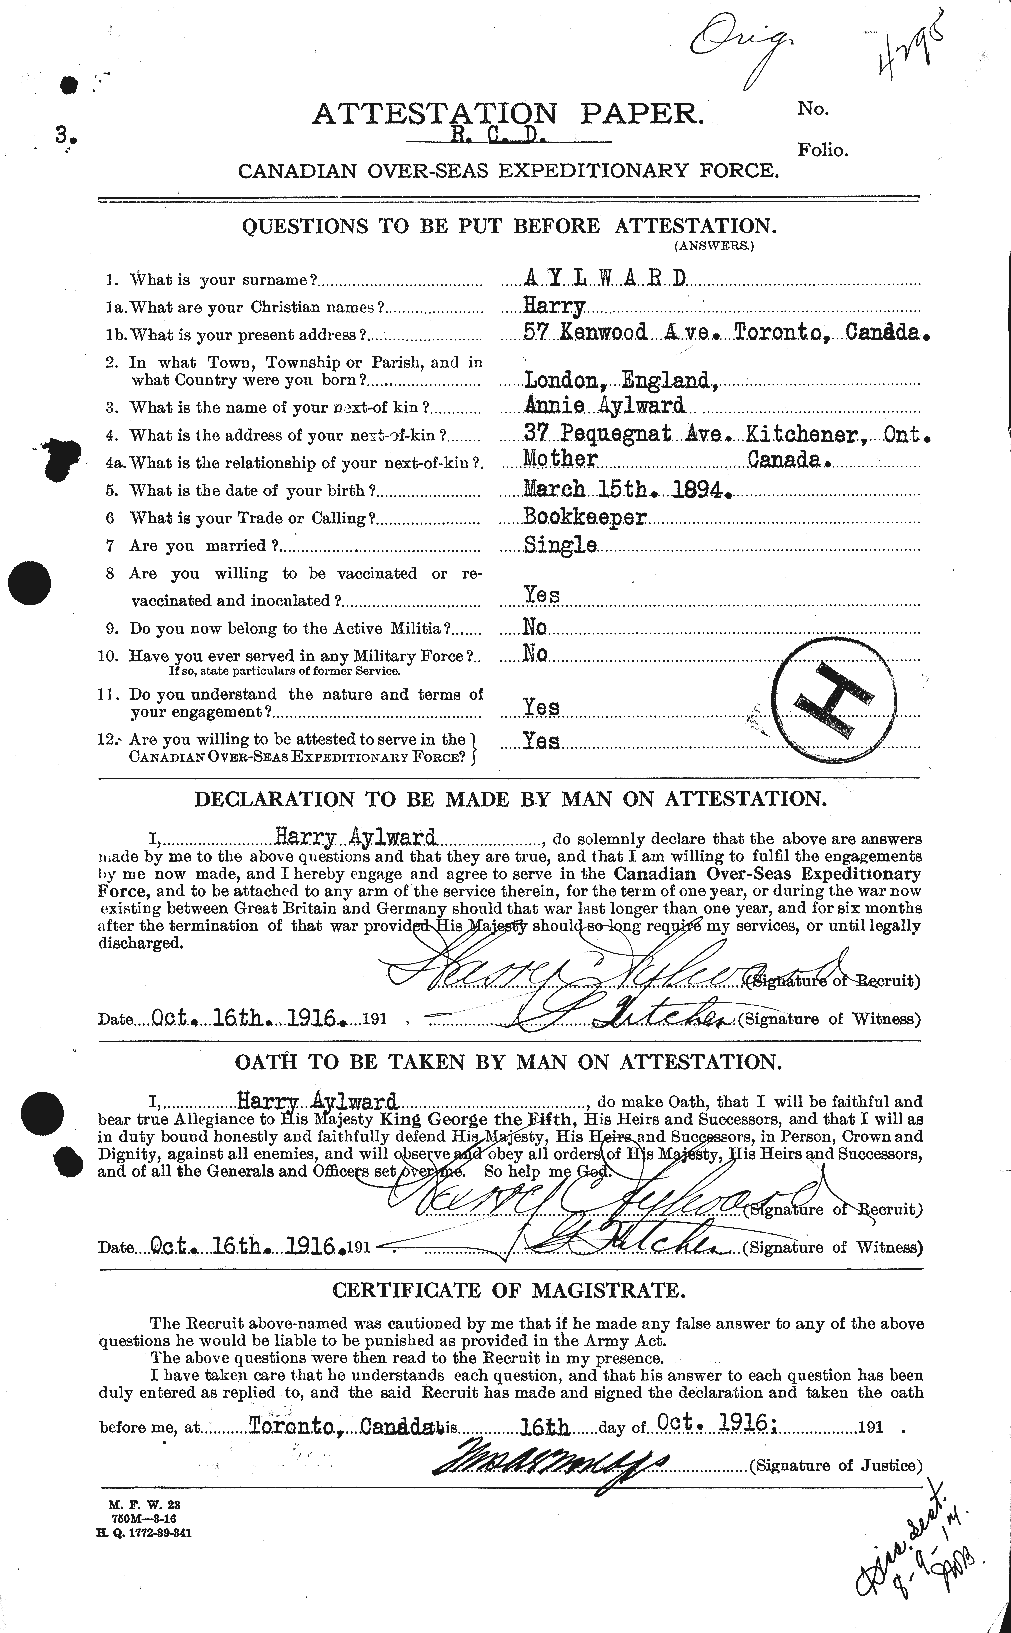 Dossiers du Personnel de la Première Guerre mondiale - CEC 215744a